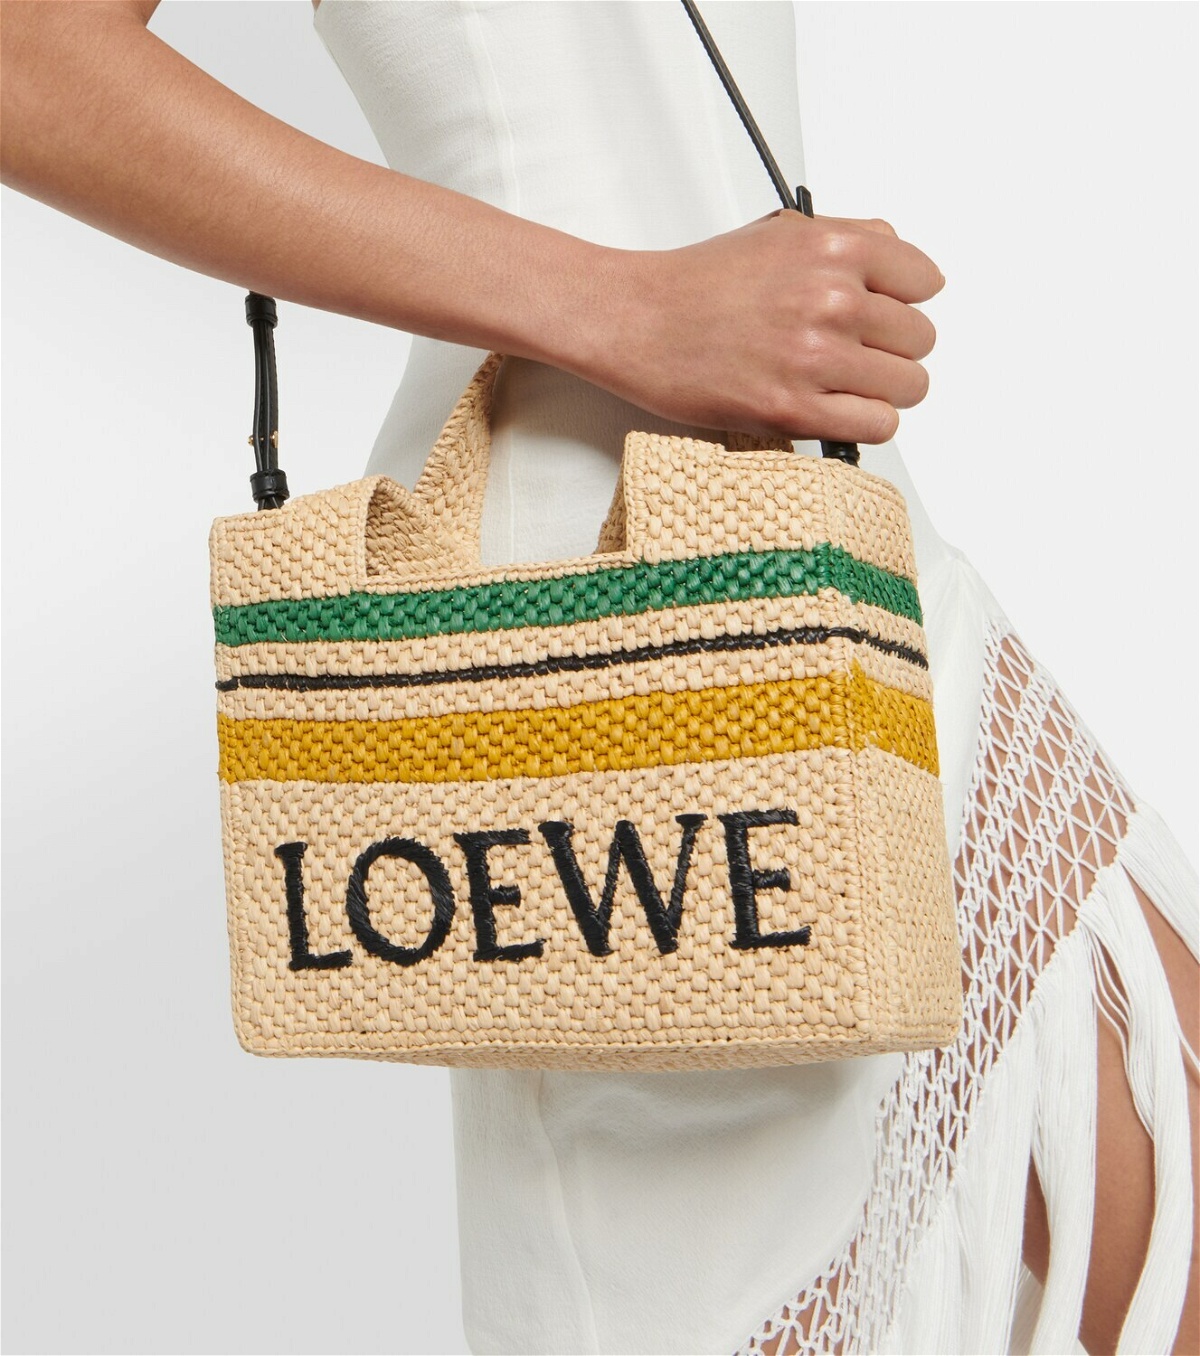 Logo raffia tote bag by Loewe